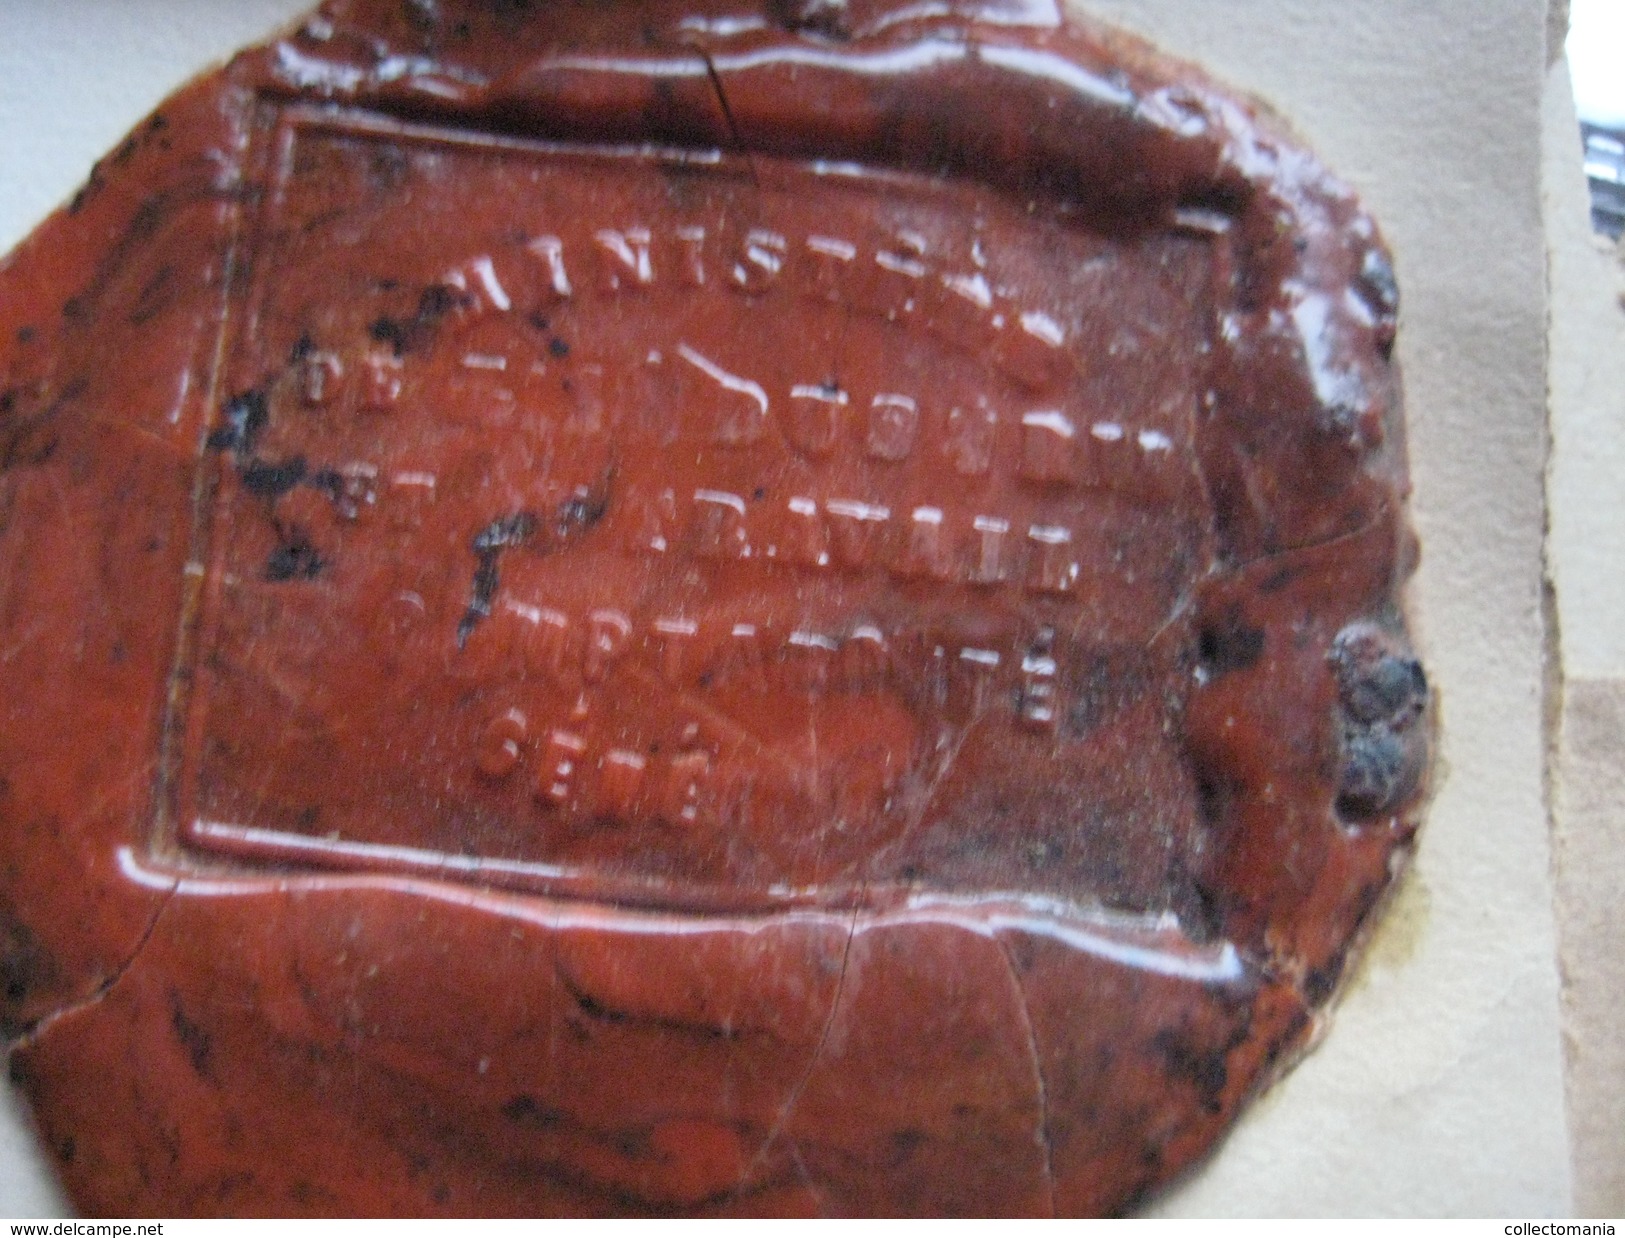 wax seals - lakzegels collection, 2cm à 4cm, before 1900 - sceaux de cire - adel familiekunde zegels van was, prachtig